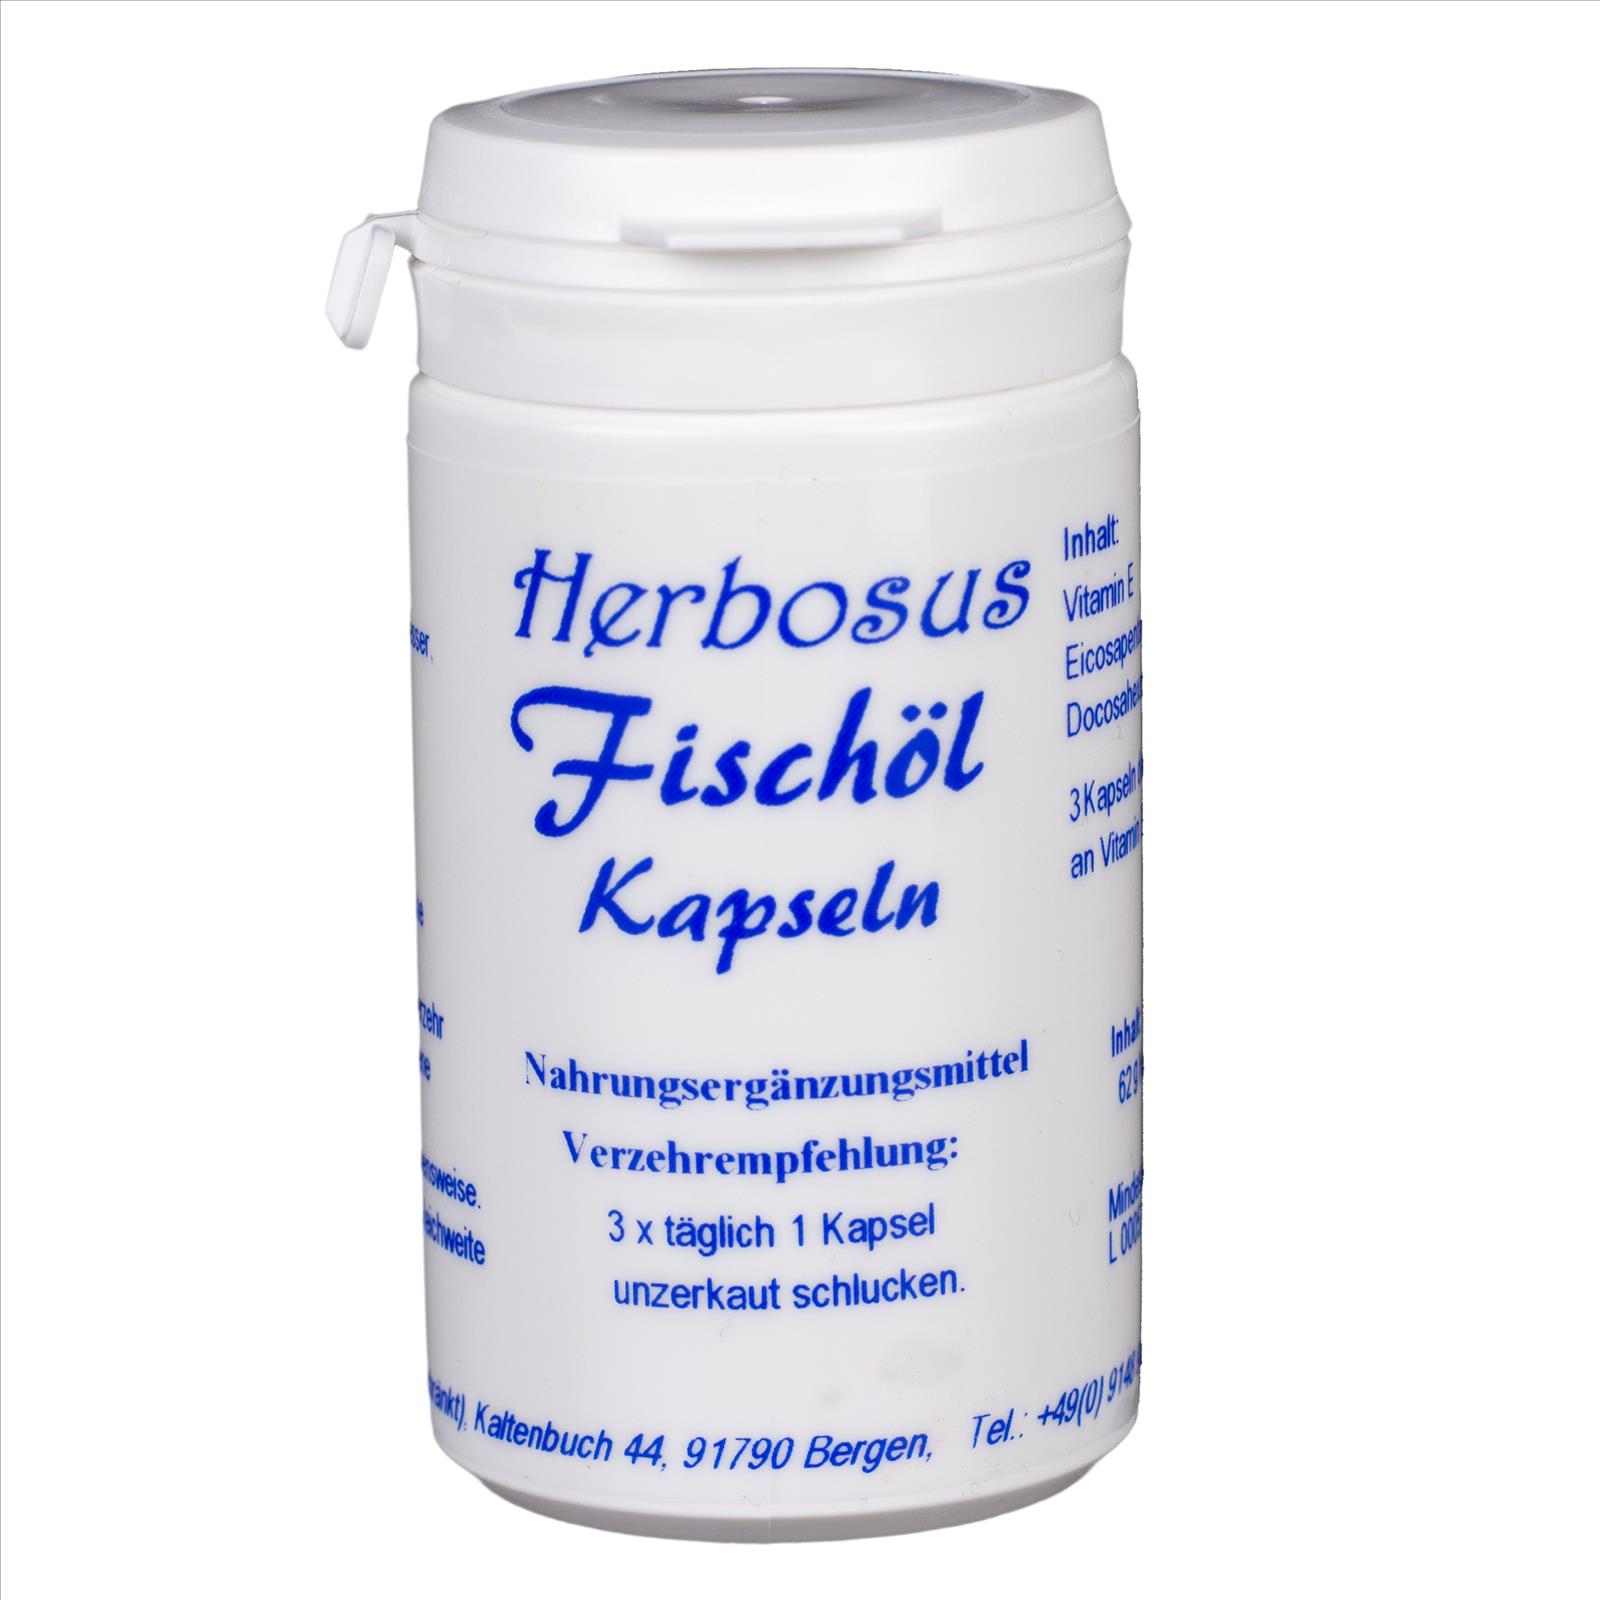 Fischöl- Kapseln von Herbosus